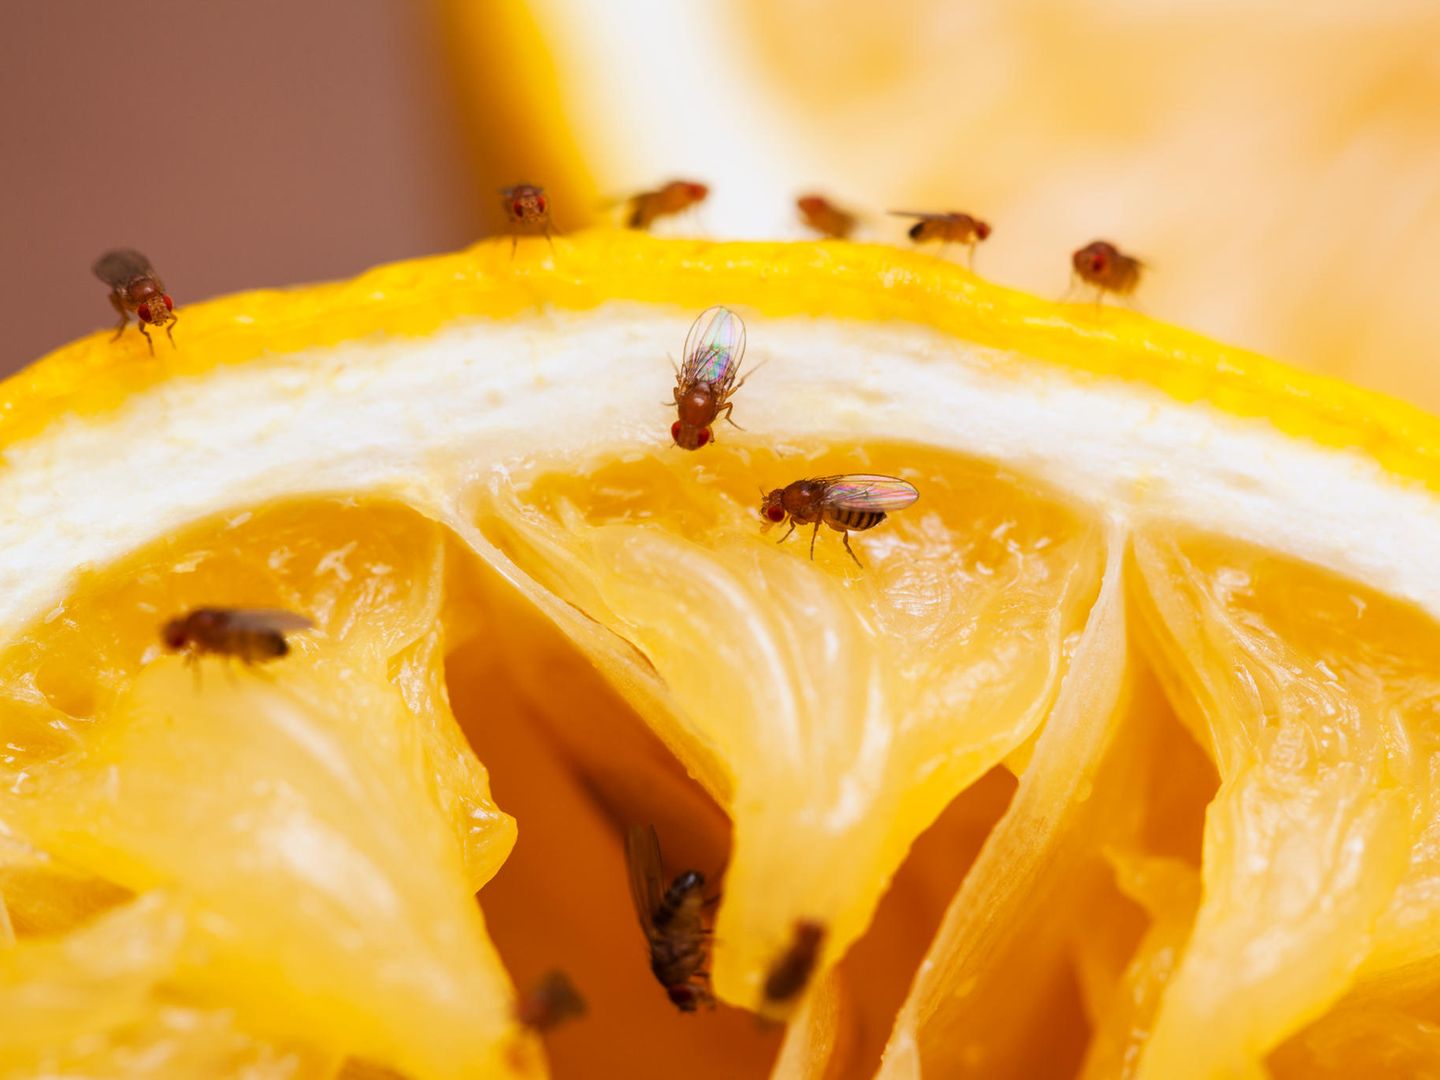 Fruchtfliegen sind überall… Aber keine Panik, mit DIESEM Trick können Sie sie für immer loswerden! ➤ Buzzday.info